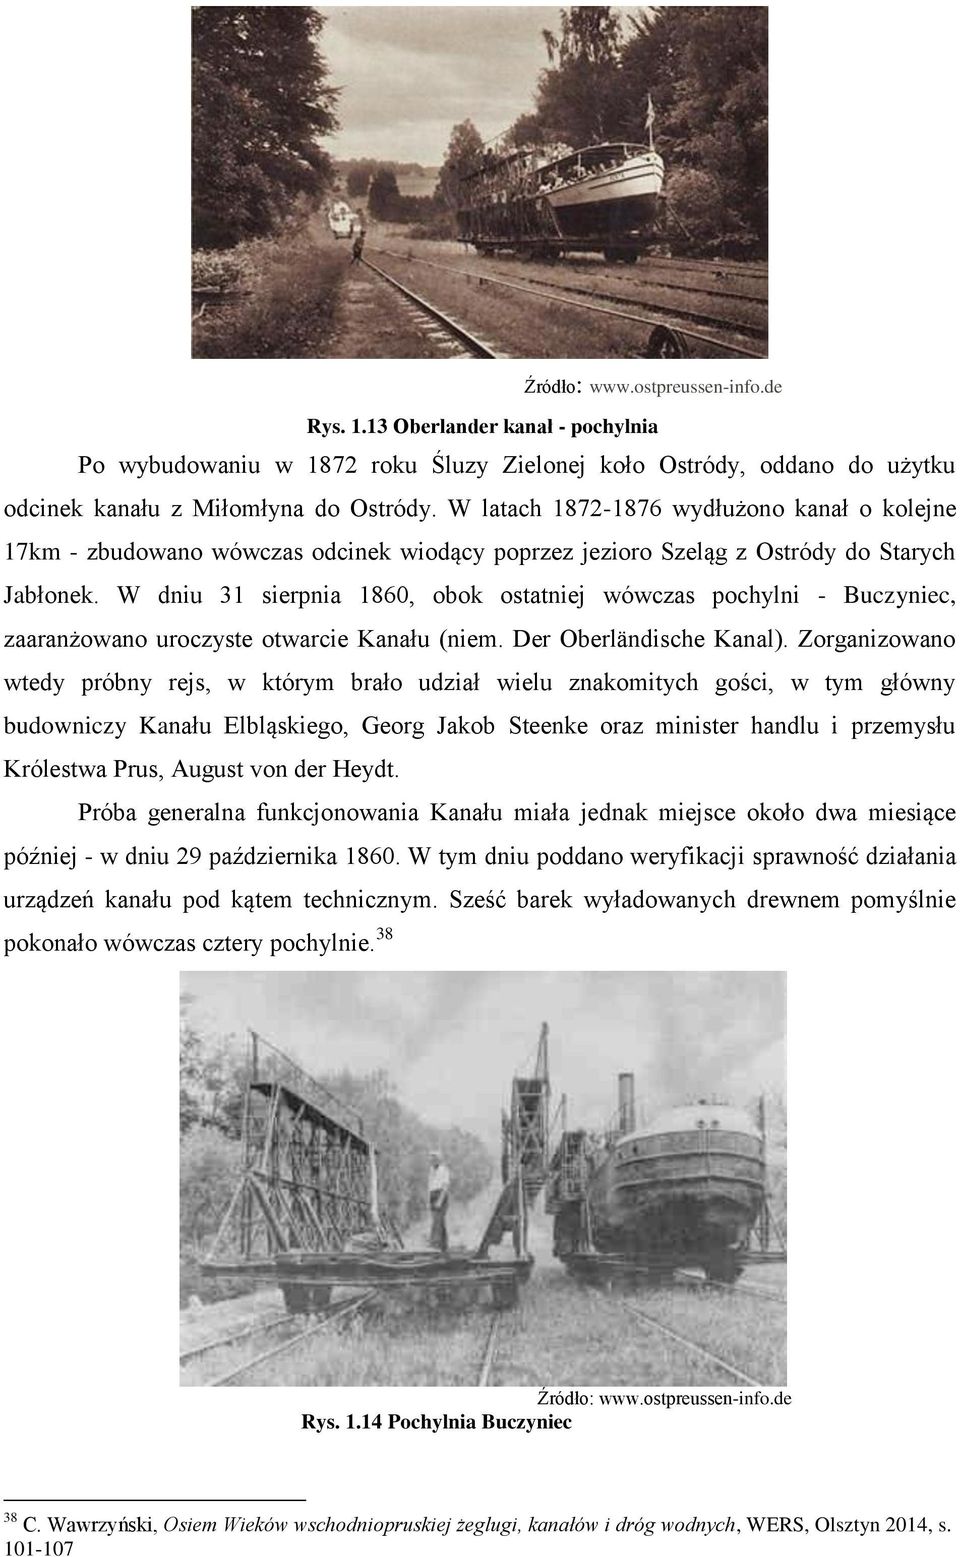 W dniu 31 sierpnia 1860, obok ostatniej wówczas pochylni - Buczyniec, zaaranżowano uroczyste otwarcie Kanału (niem. Der Oberländische Kanal).